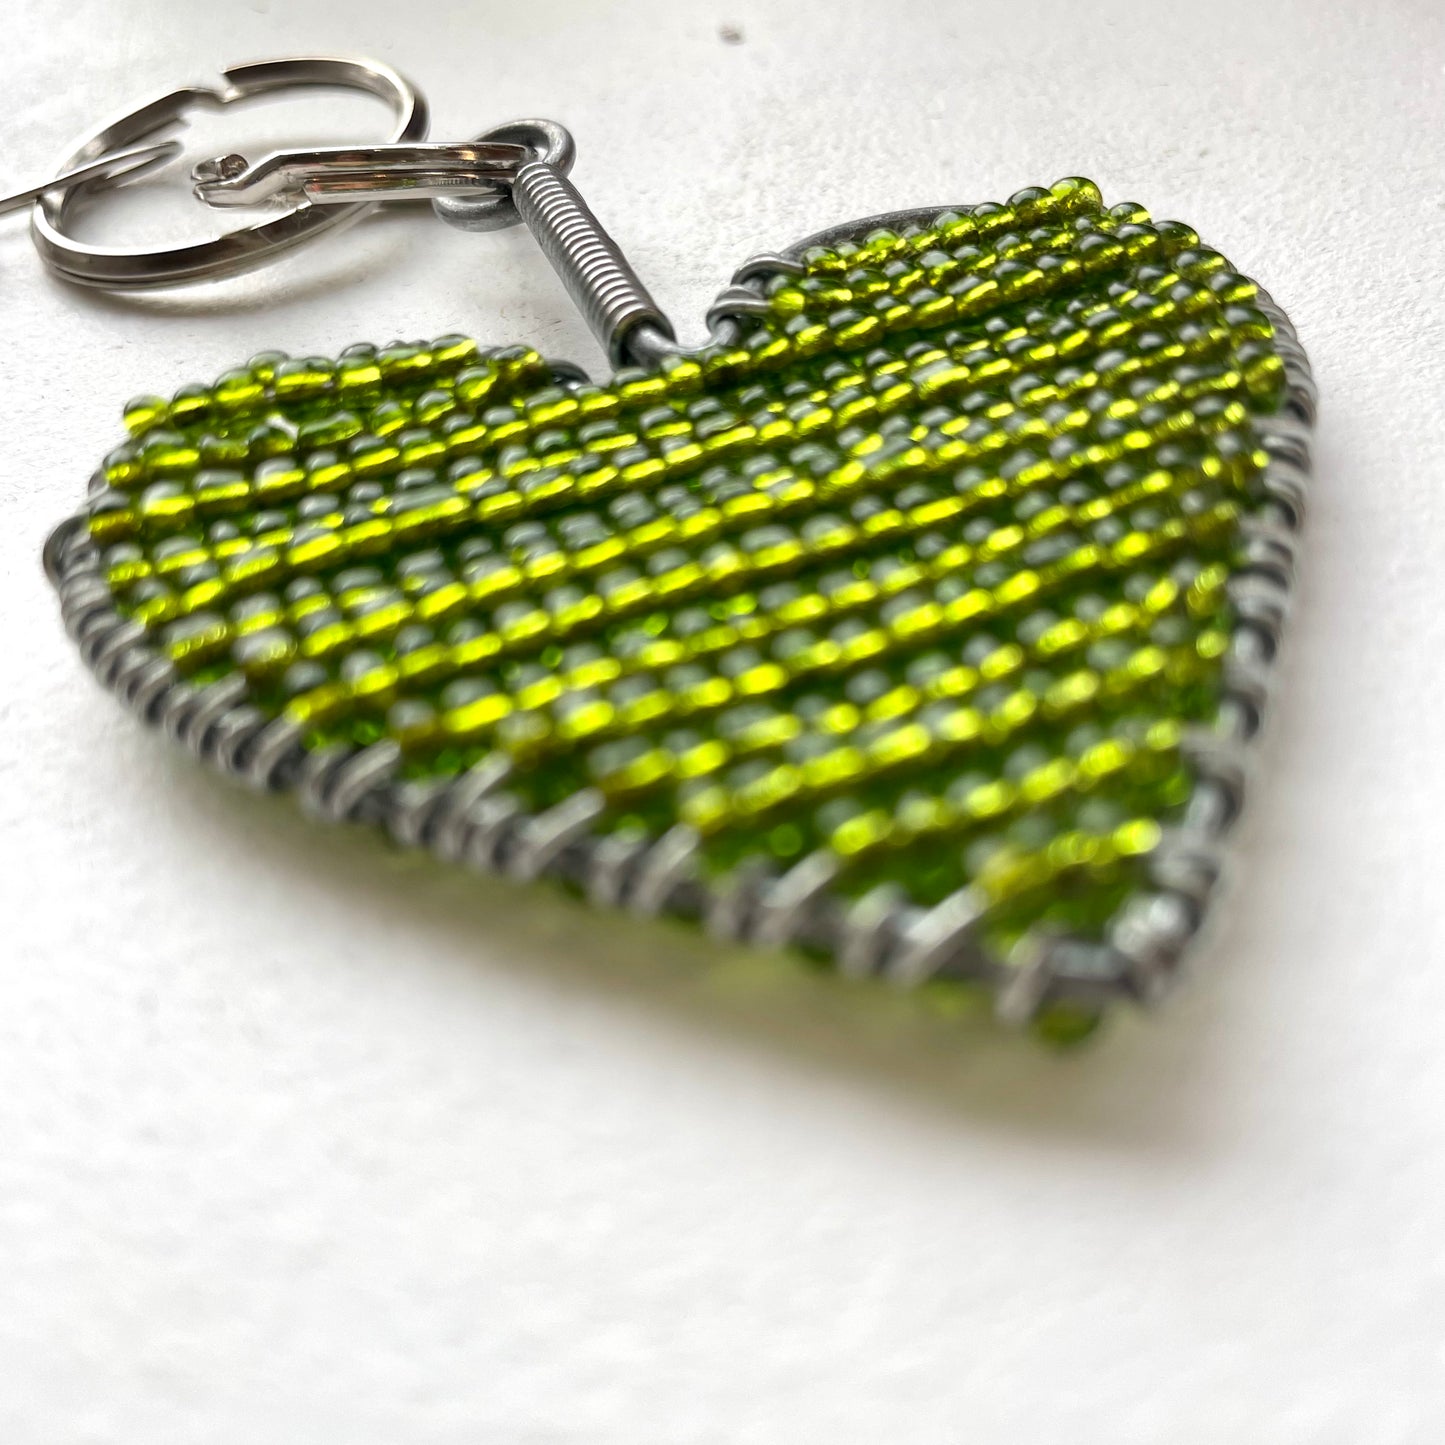 Green Heart Keychain